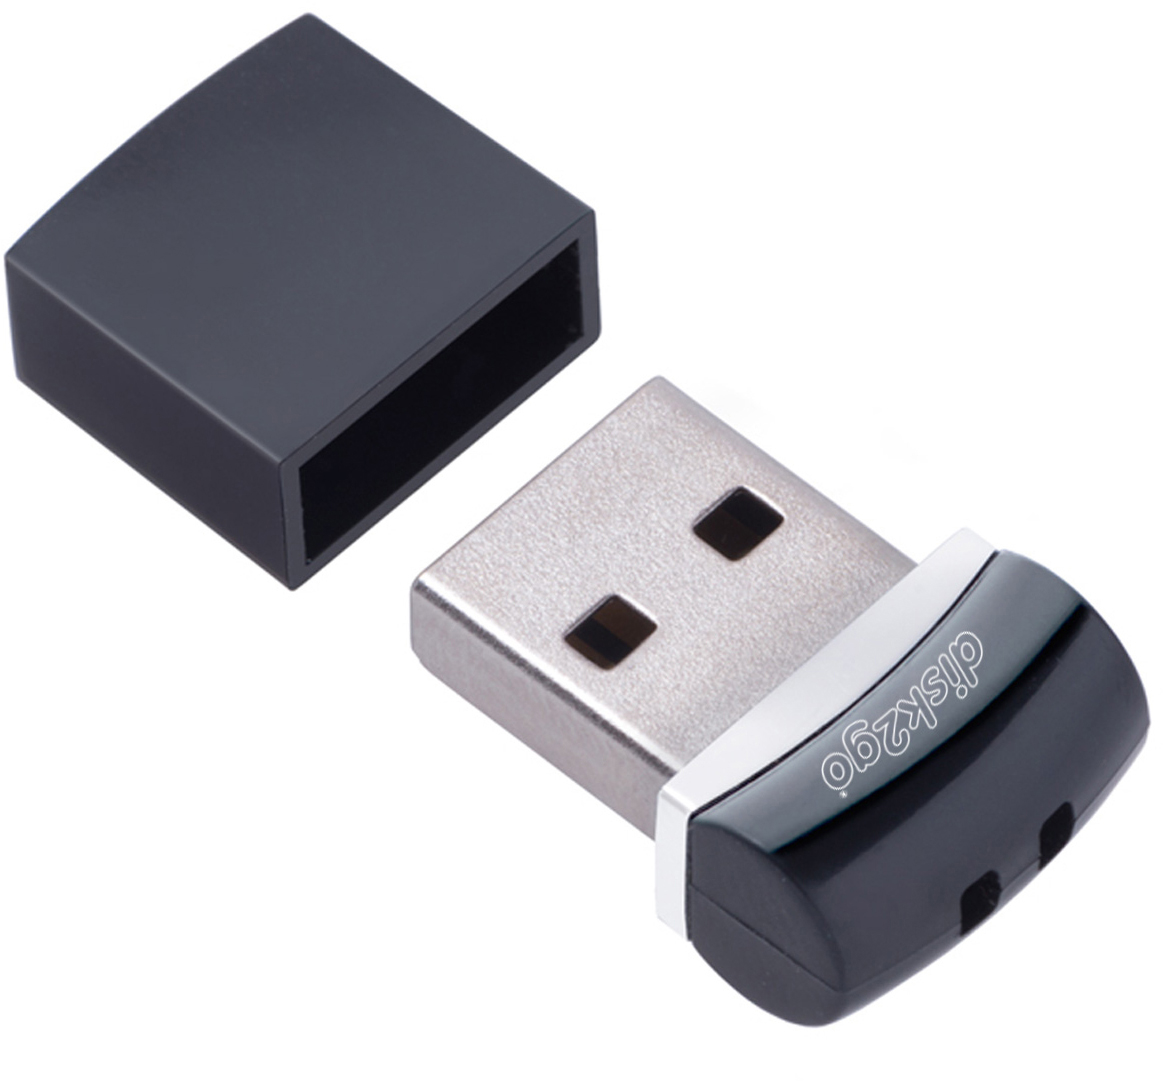 DISK2GO USB-Stick nano edge 3.0 16GB 30006680 USB 3.0